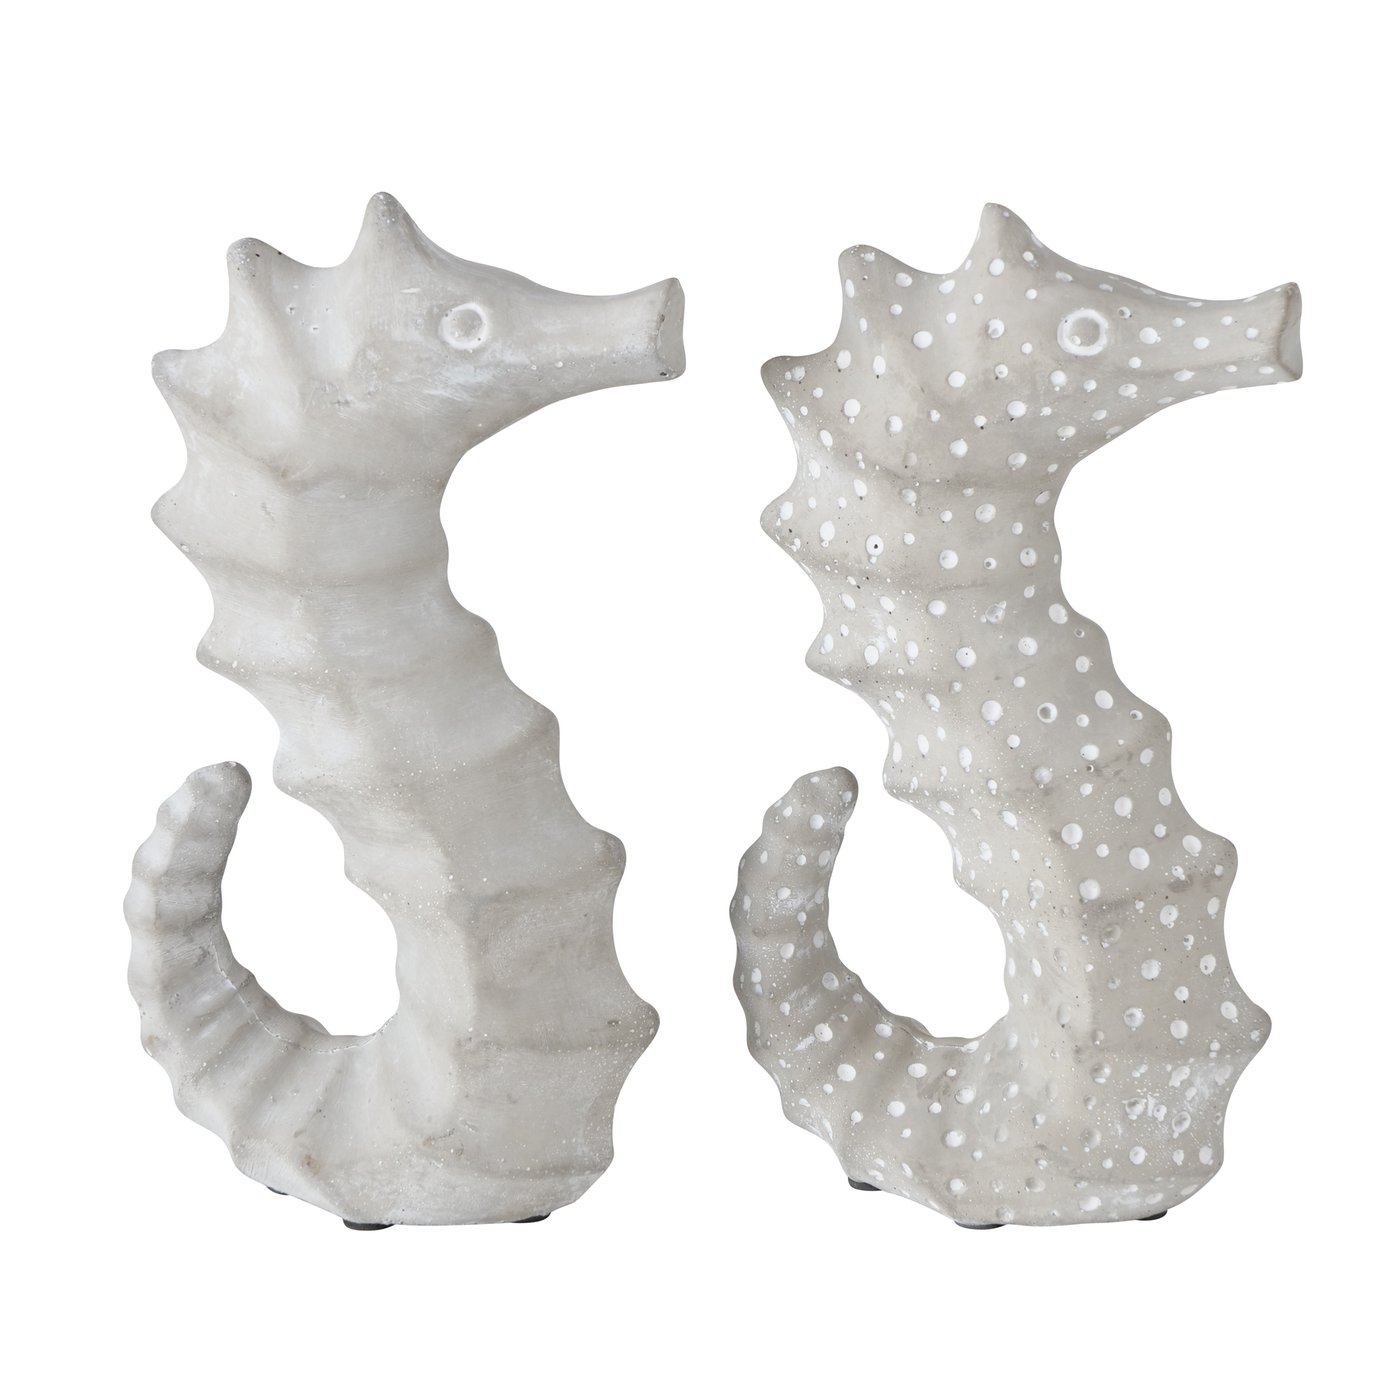 &Quirky Zevio Seahorse Figure : Plain or Spots